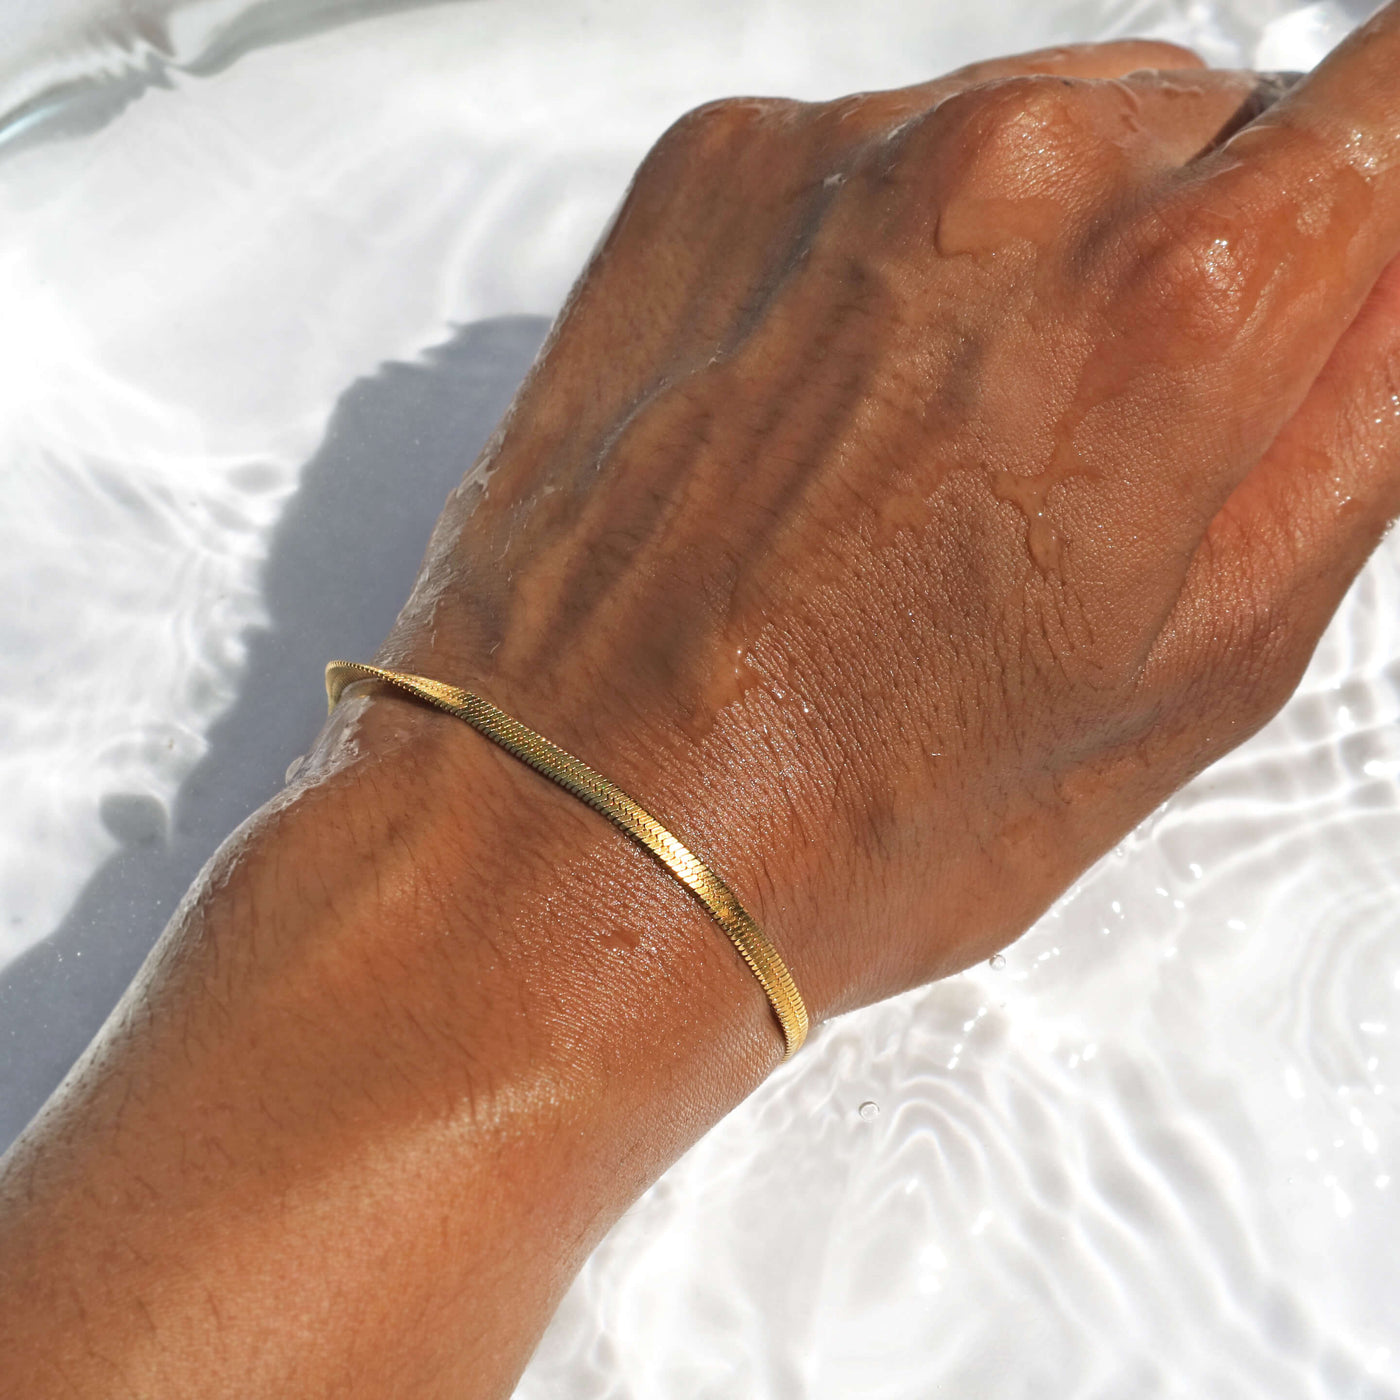 Gold Snake Chain Bracelet waterproof, Rani & Co. jewellery